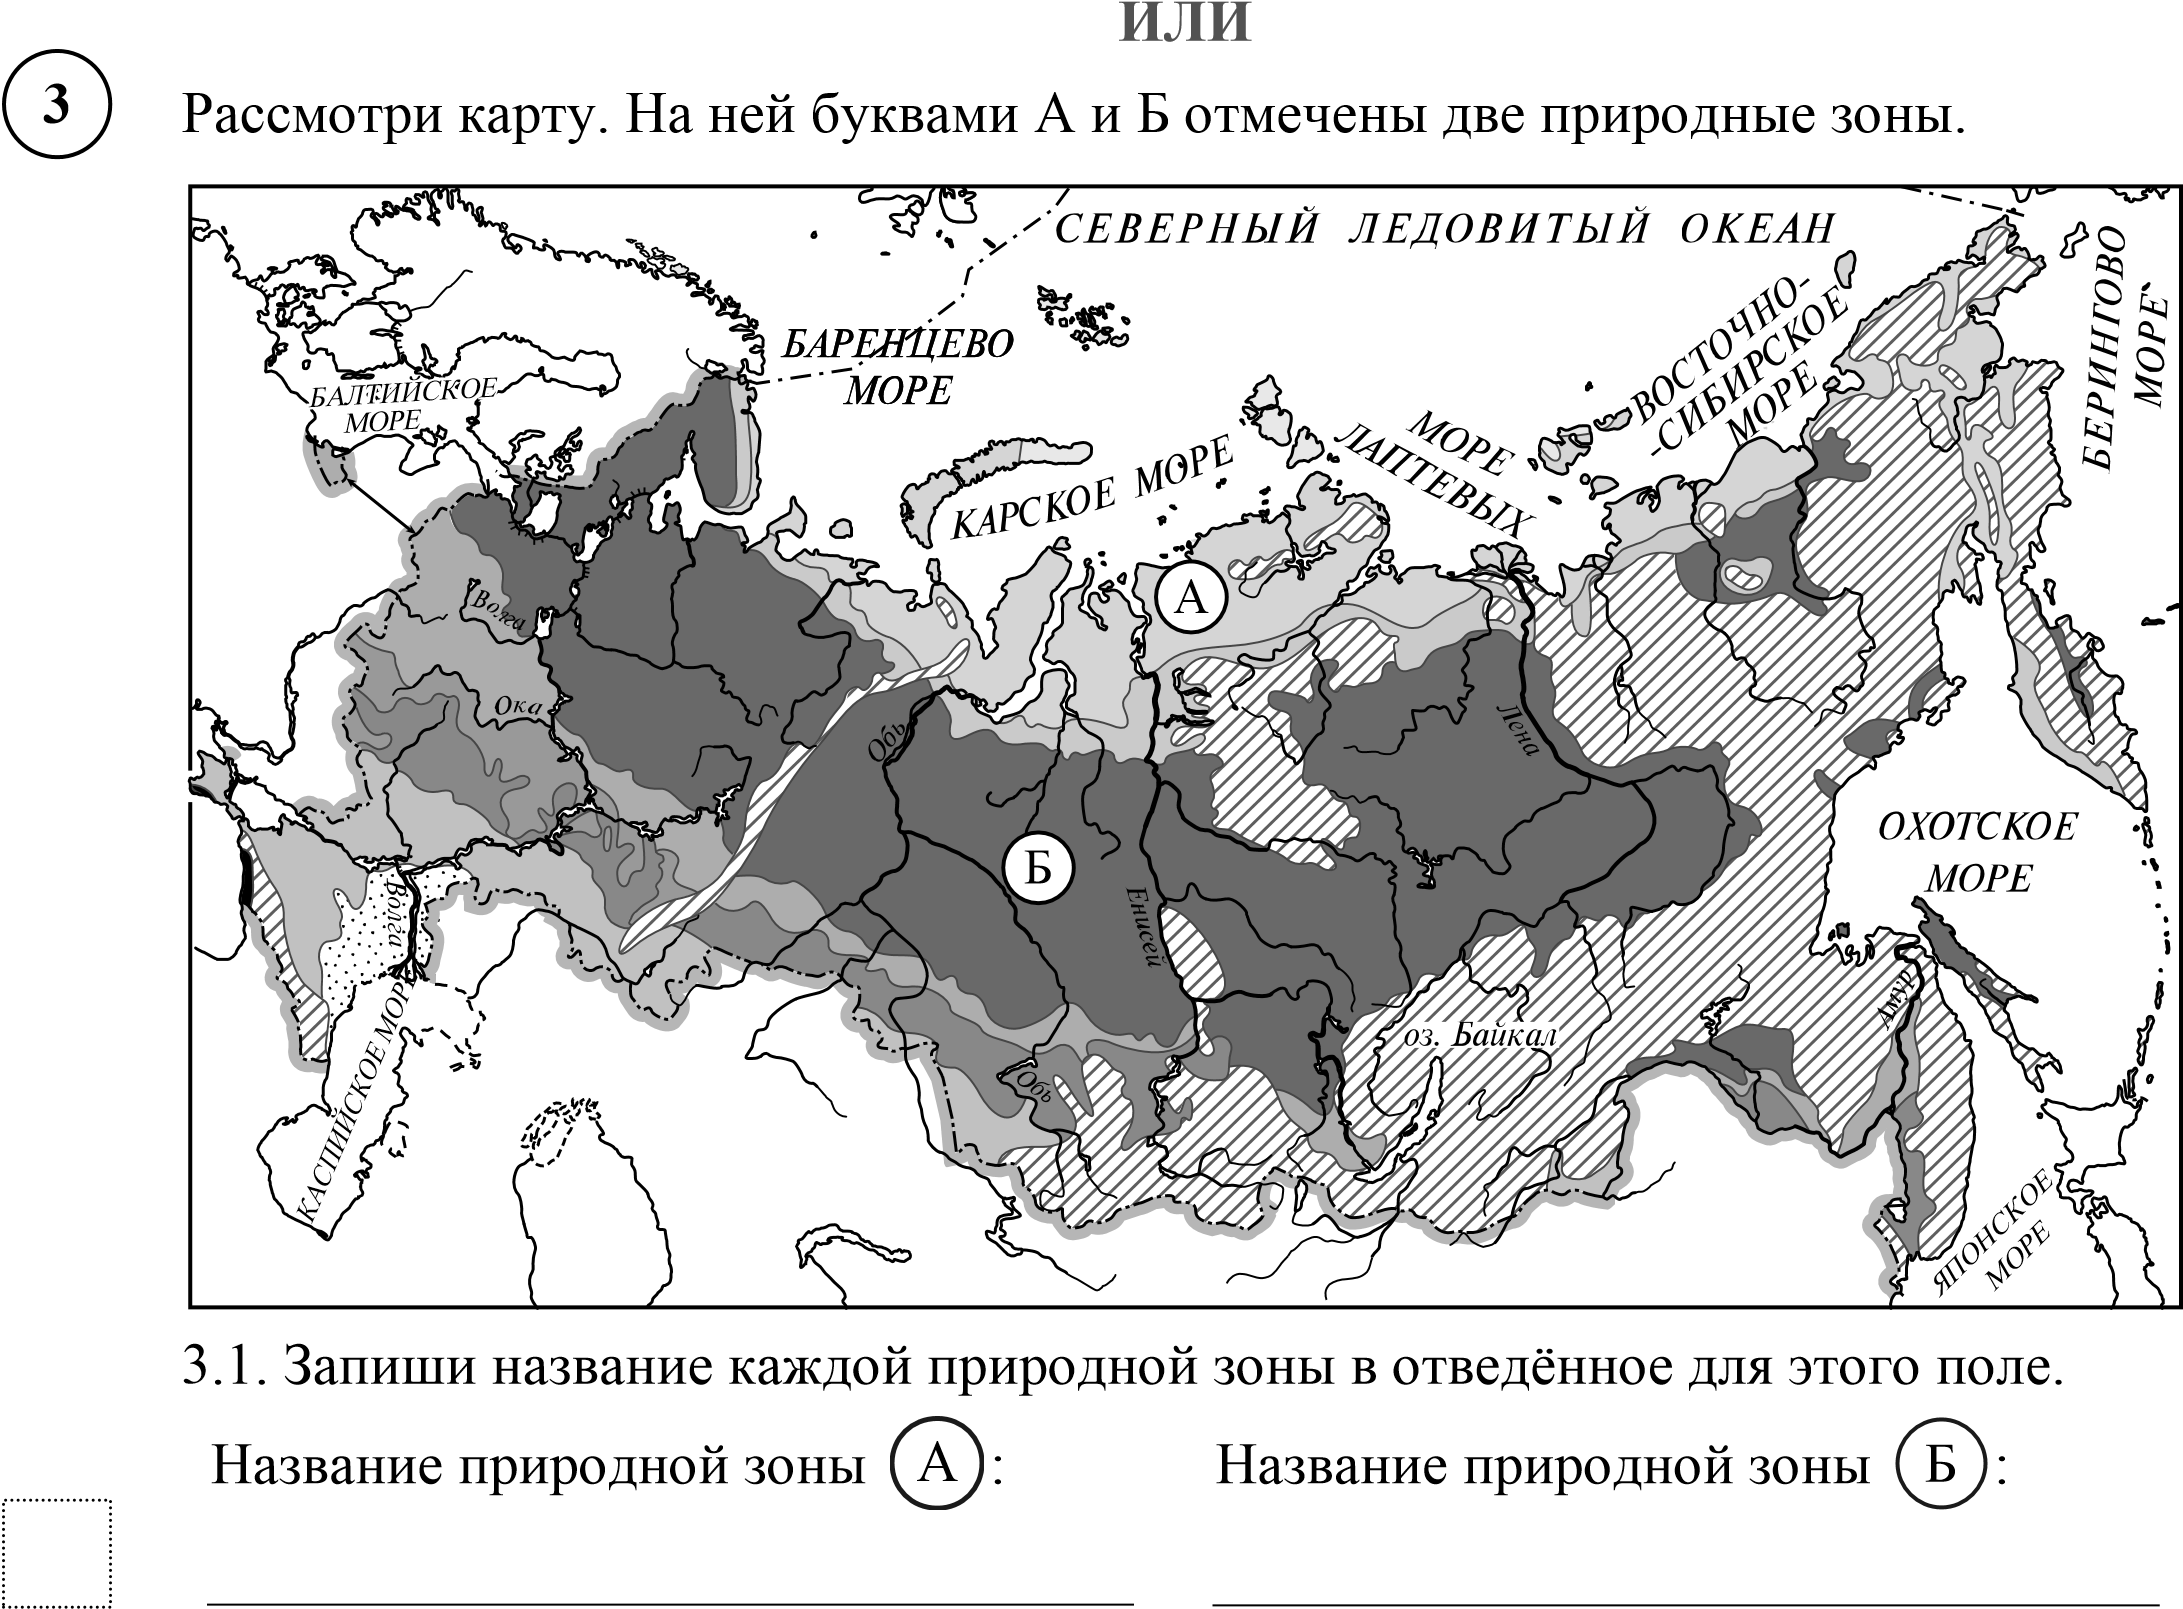 Карта впр зоны окружающий мир ответы россии. Карта природных зон России ВПР. Карта природных зон России 4 класс окружающий мир без названий. Карта природных зон России 4 класс черно белая. Карта России черно белая природные зоны.